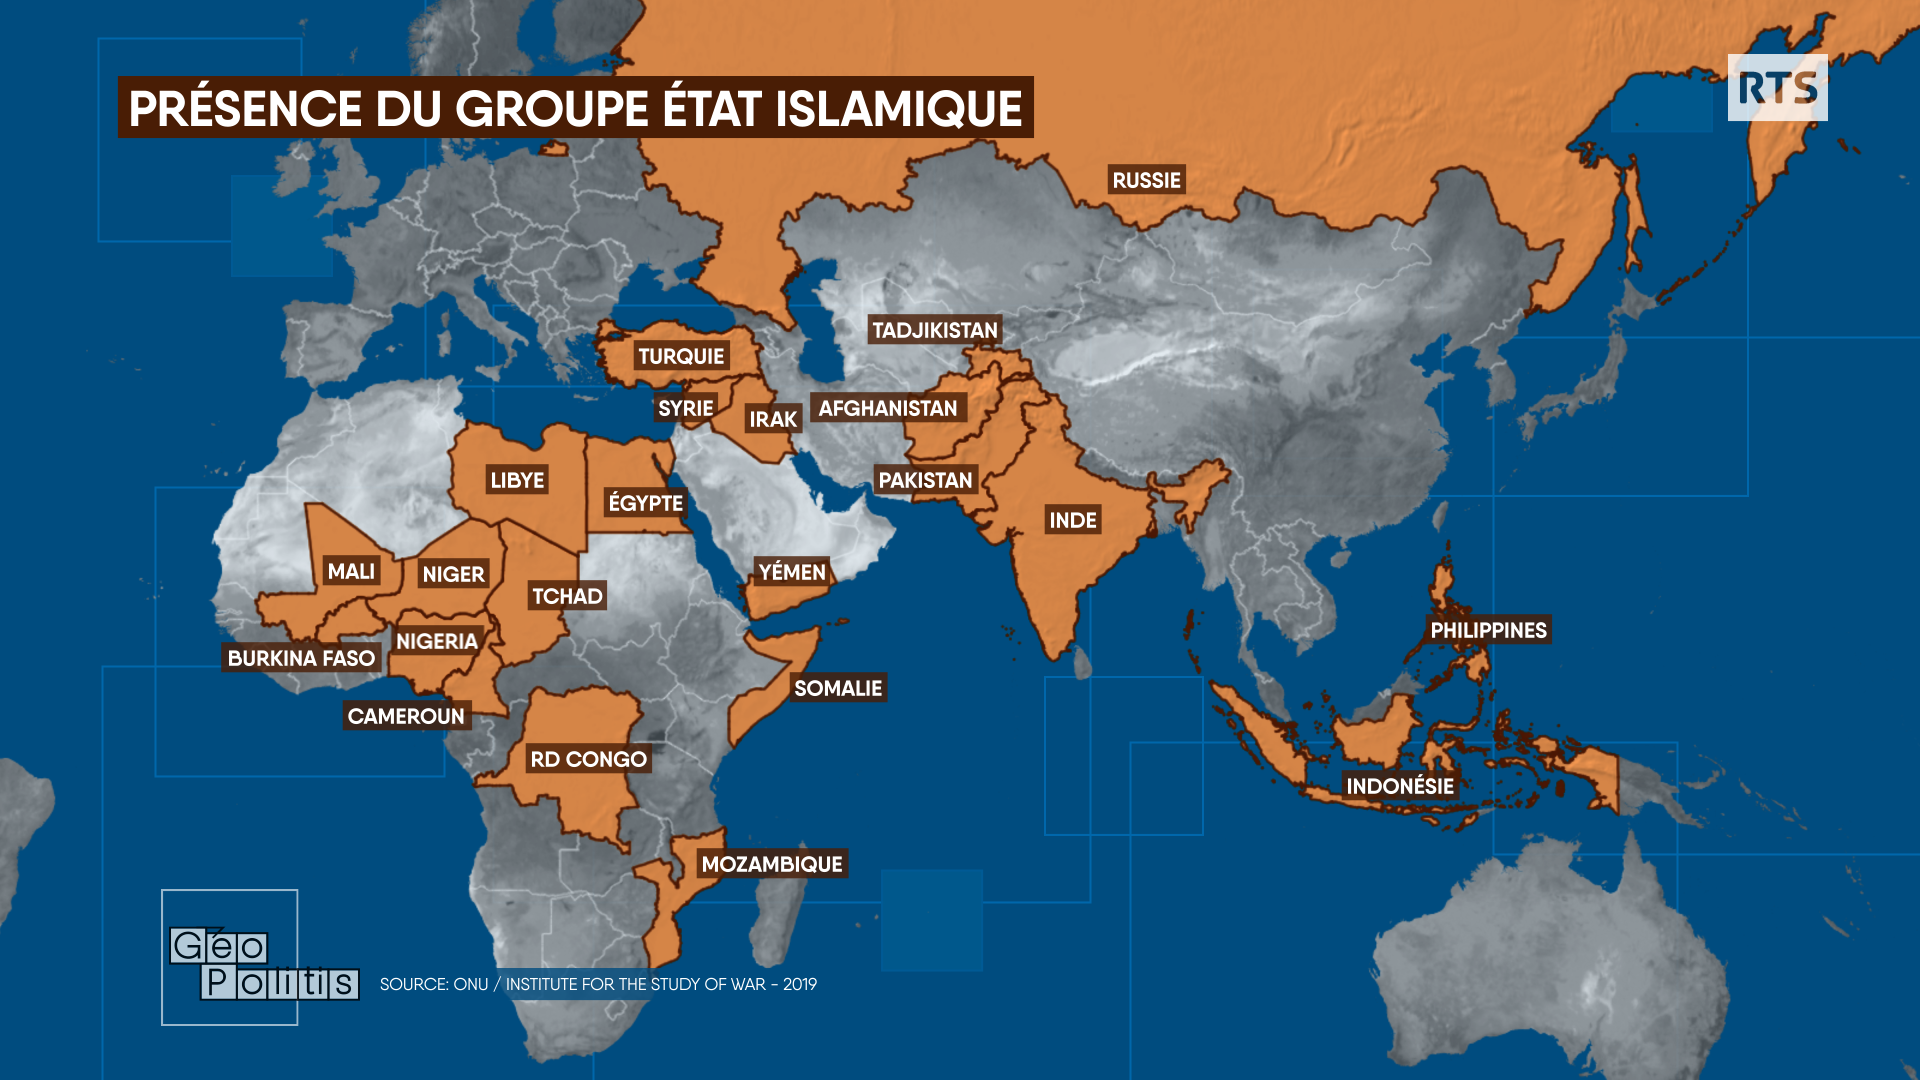 Présence du groupe État islamique dans le monde. [RTS - Géopolitis]